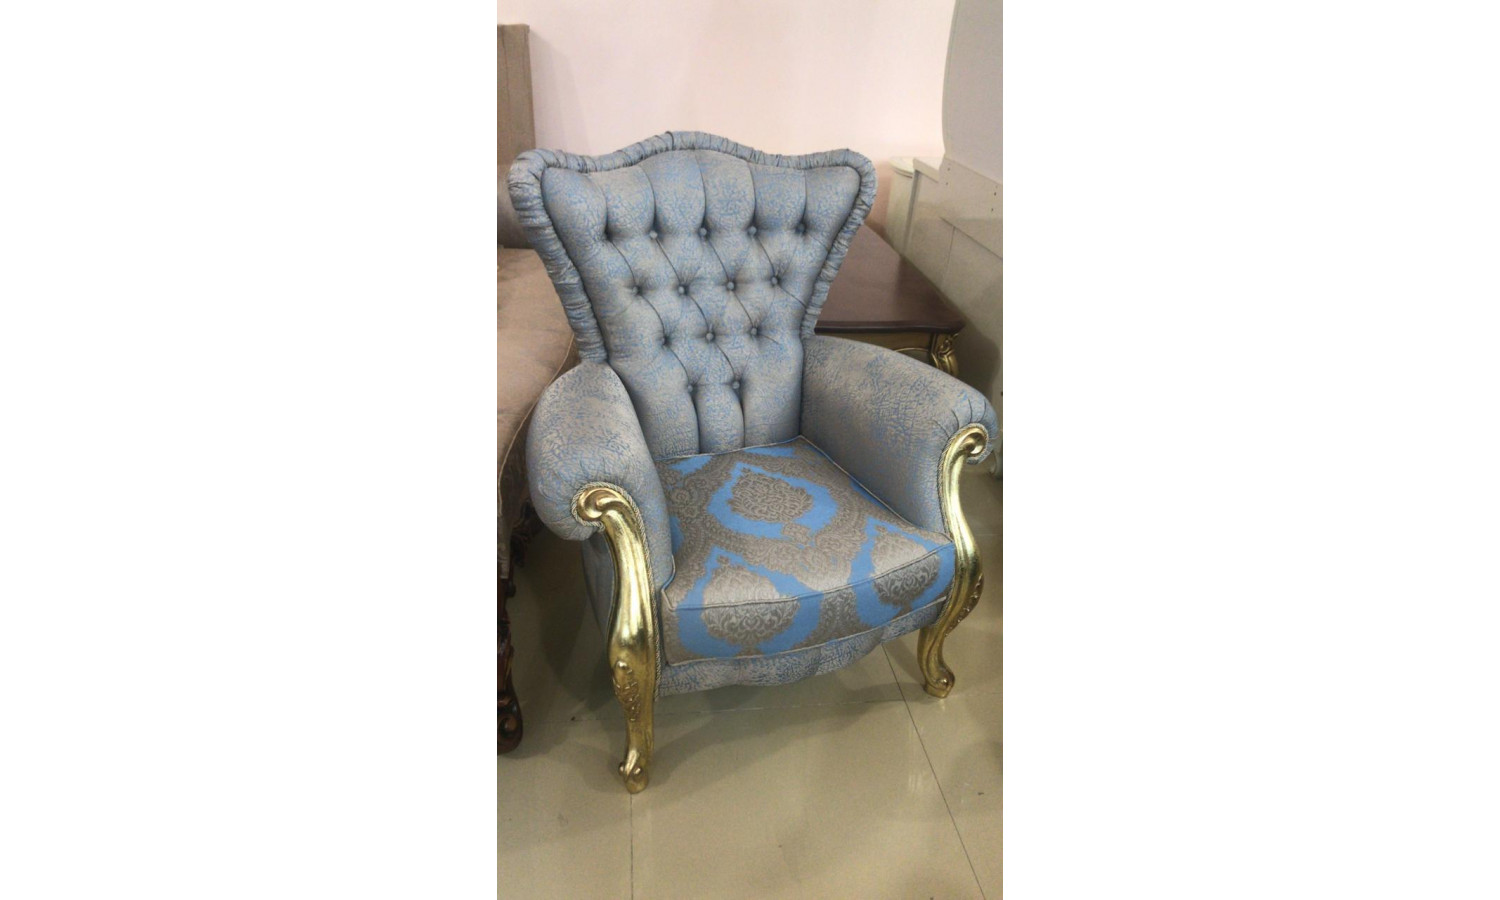 Комплект мягкой мебели ХЮРРЕМ CHURREM, золото, ткань - голубой